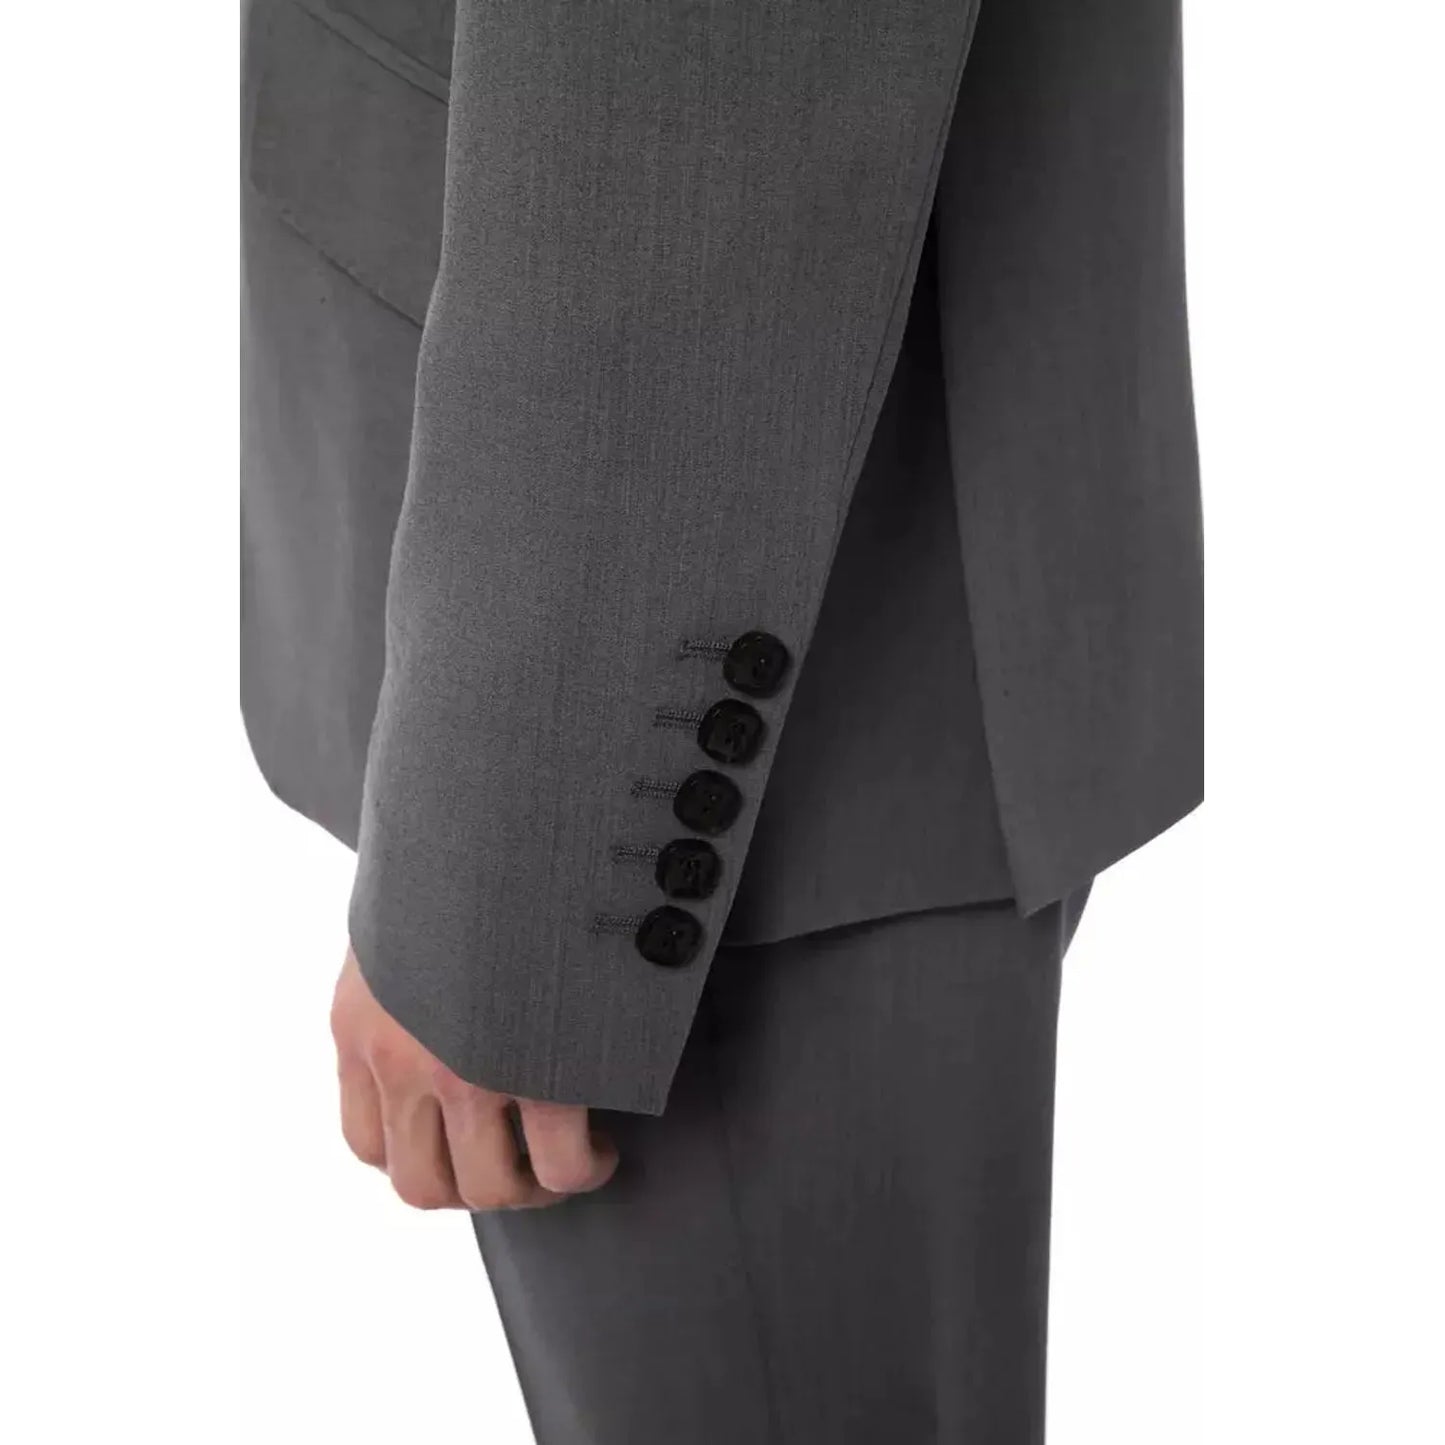 Billionaire Italian Couture Elegant Gray Wool Two-Button Designer Suit grich-lt-grey-suit-1 stock_product_image_10383_1340390264-17-df5c7211-c98.webp